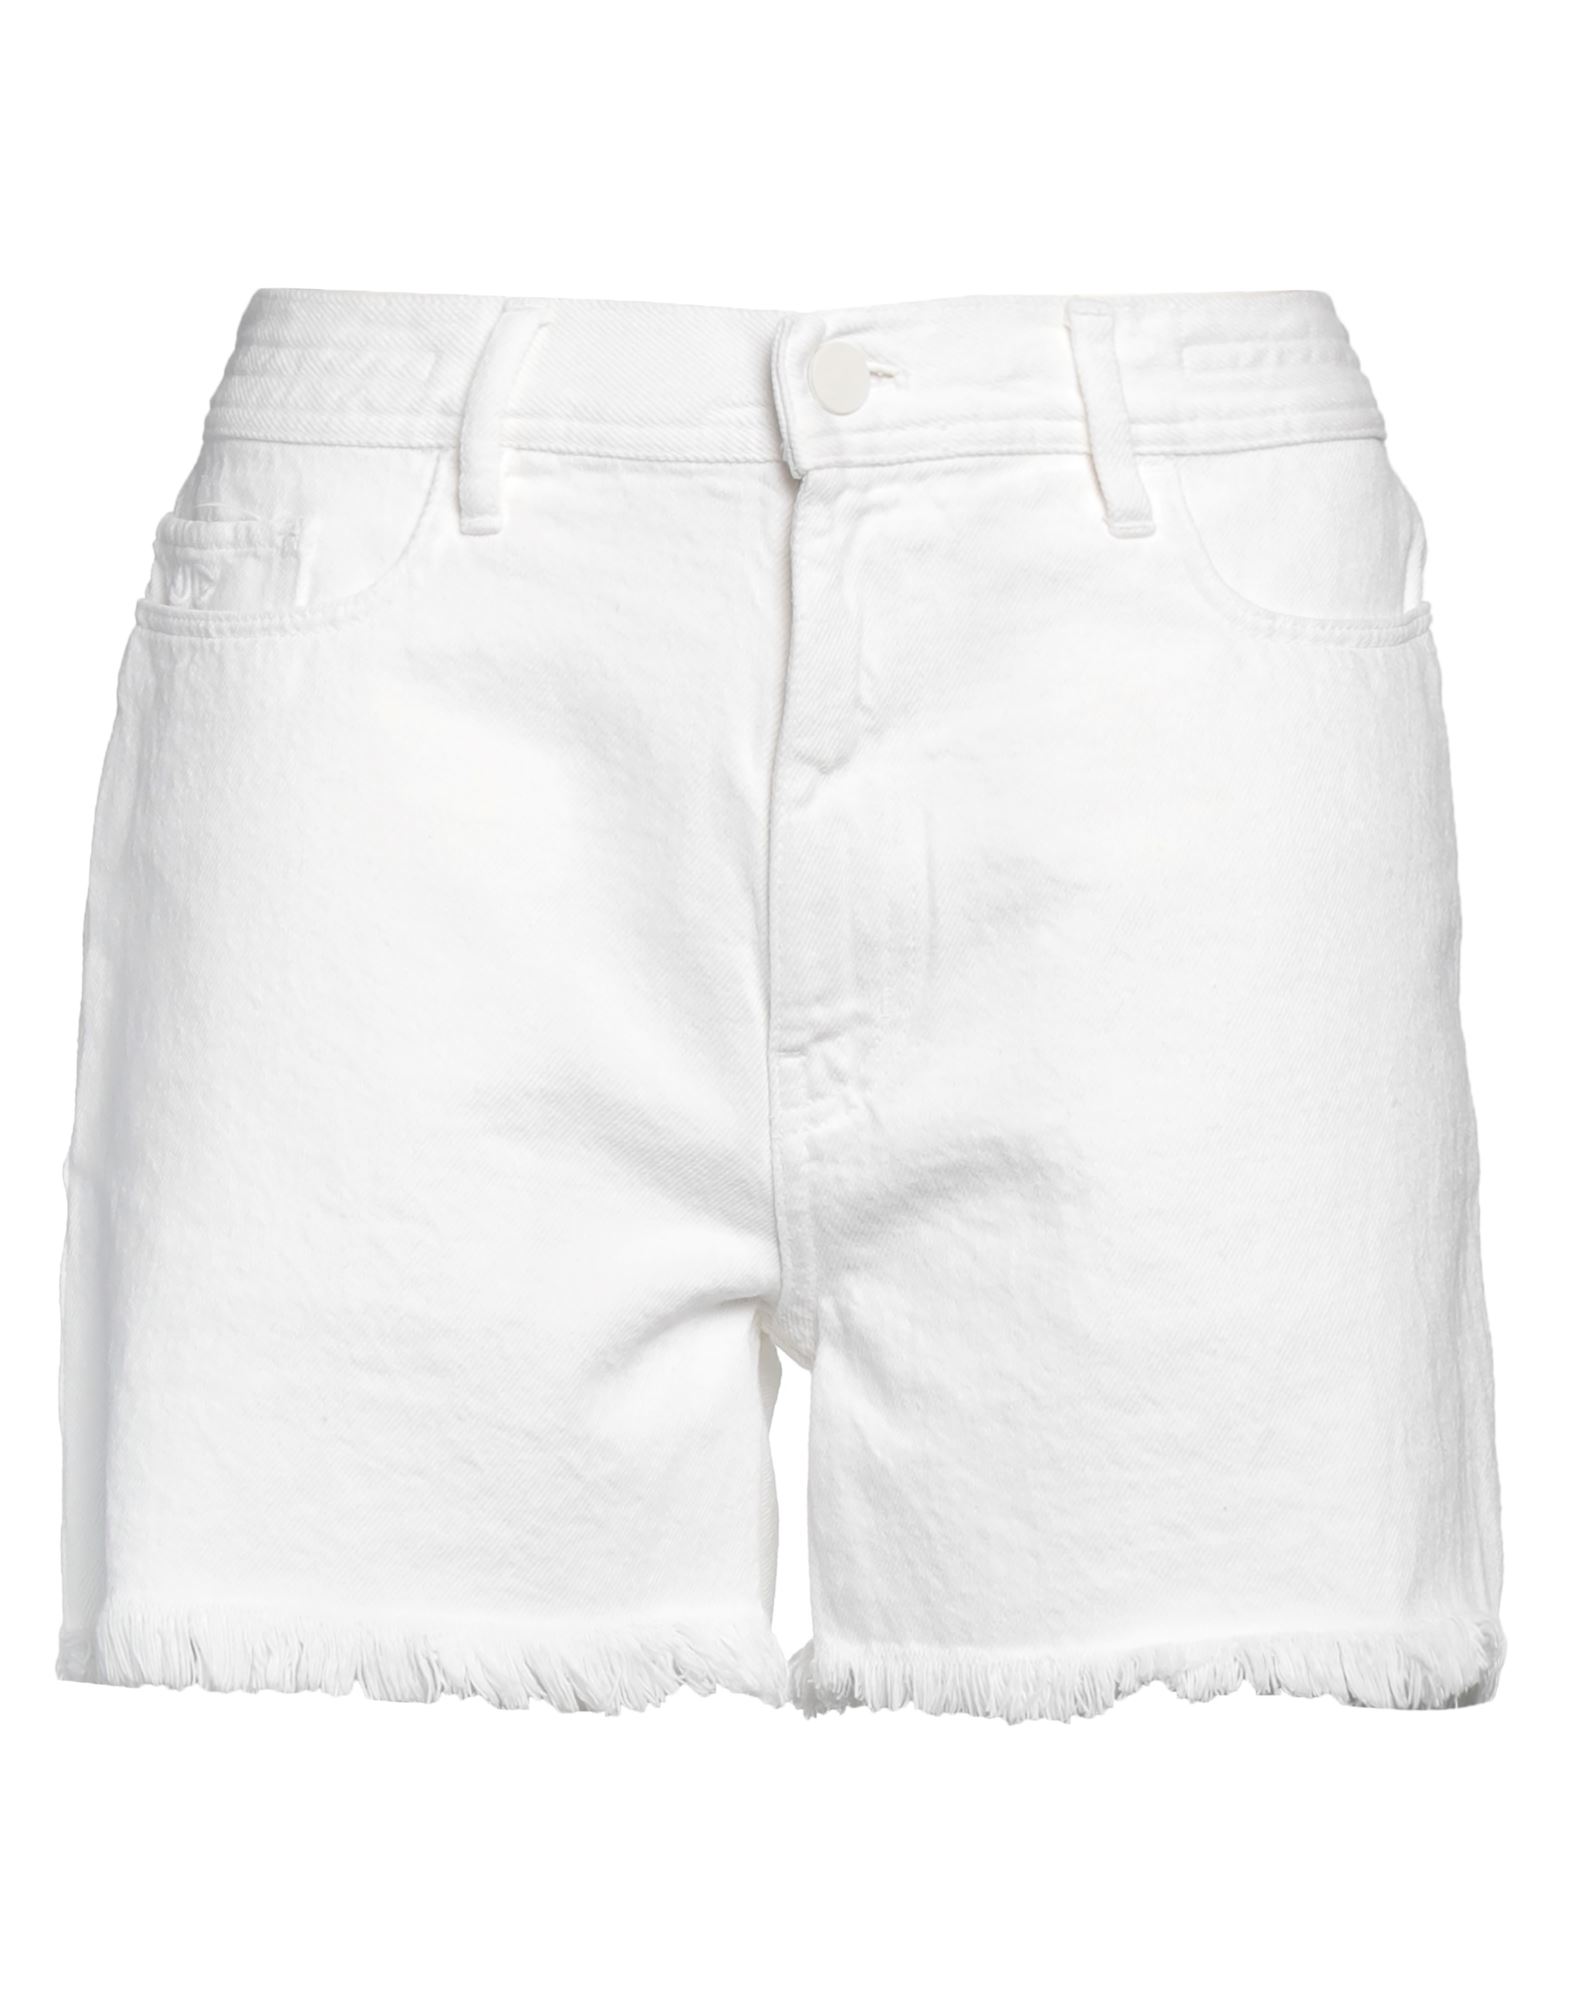 Jacob Cohёn Denim Shorts In White